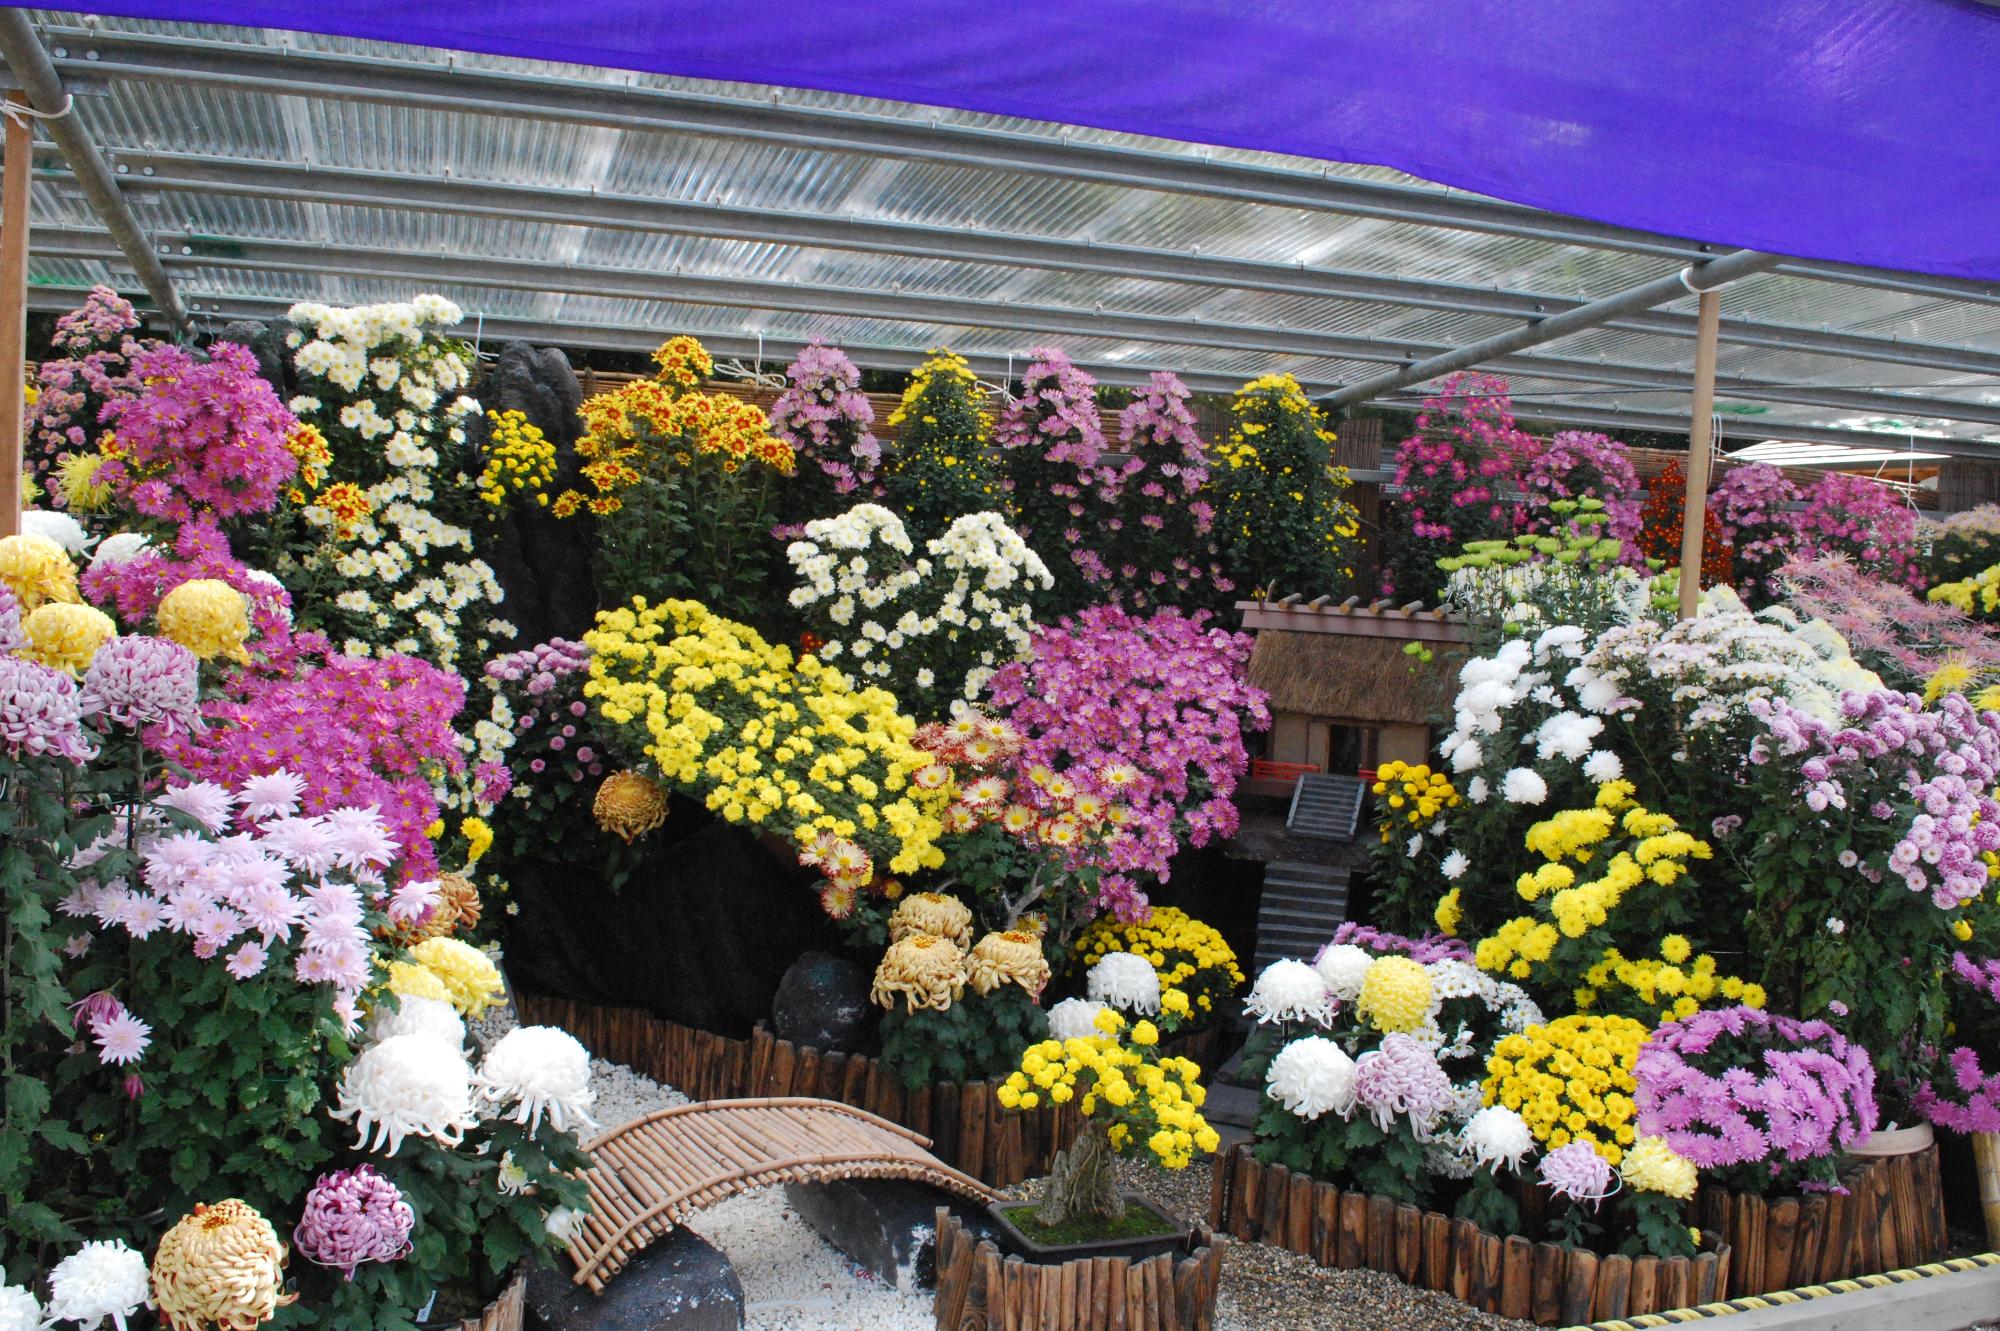 橿原菊花展で展示されているいろいろな色や形の菊の写真